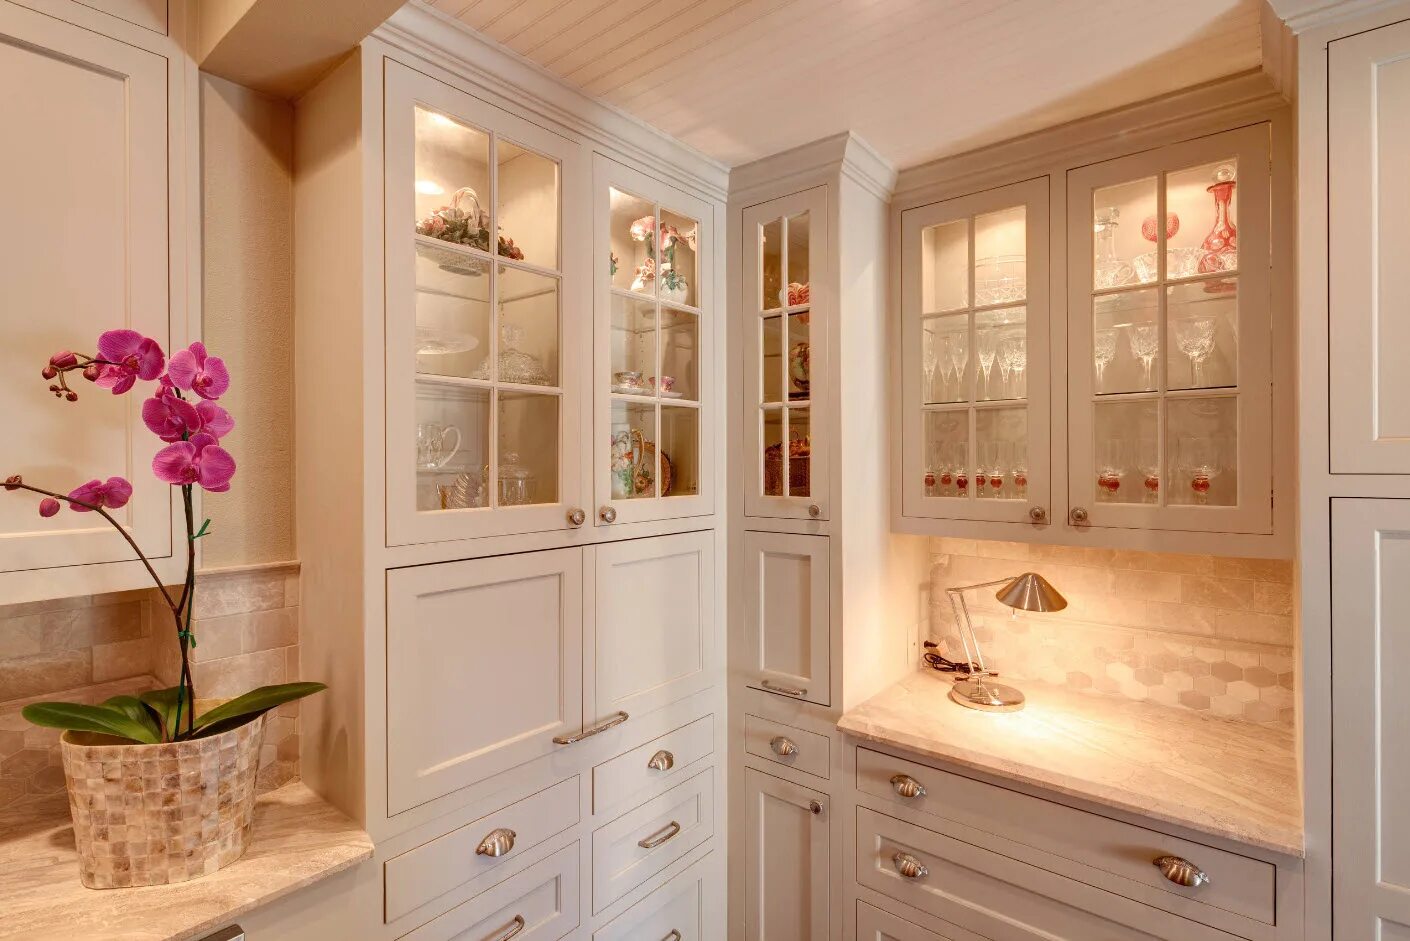 Шкаф на кухню. Буфет для кухни. Кухня со стеклянными дверками. Кухонный гарнитур с сервантом. Над витриной